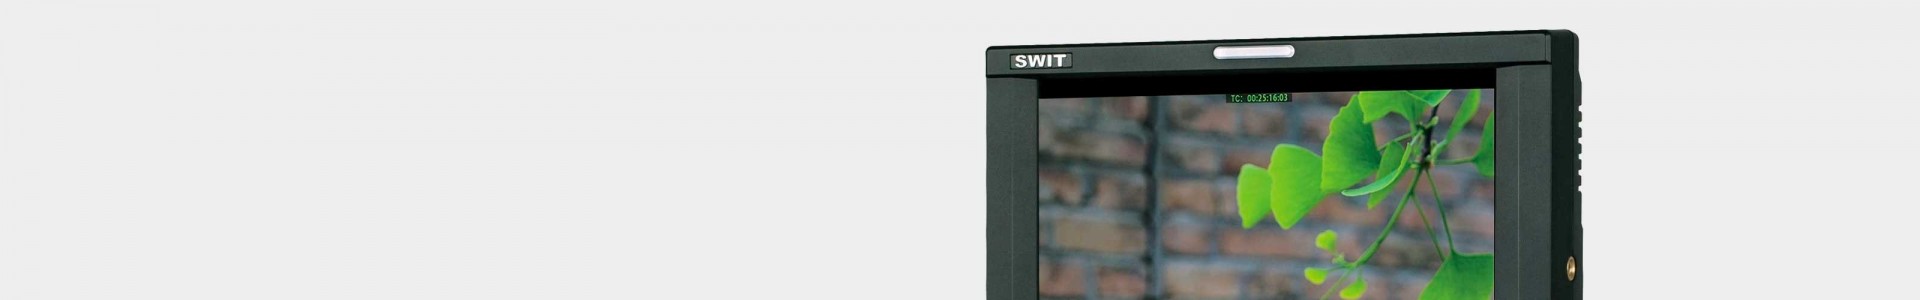 SWIT - Monitores de Vídeo para profesionales - AVACAB